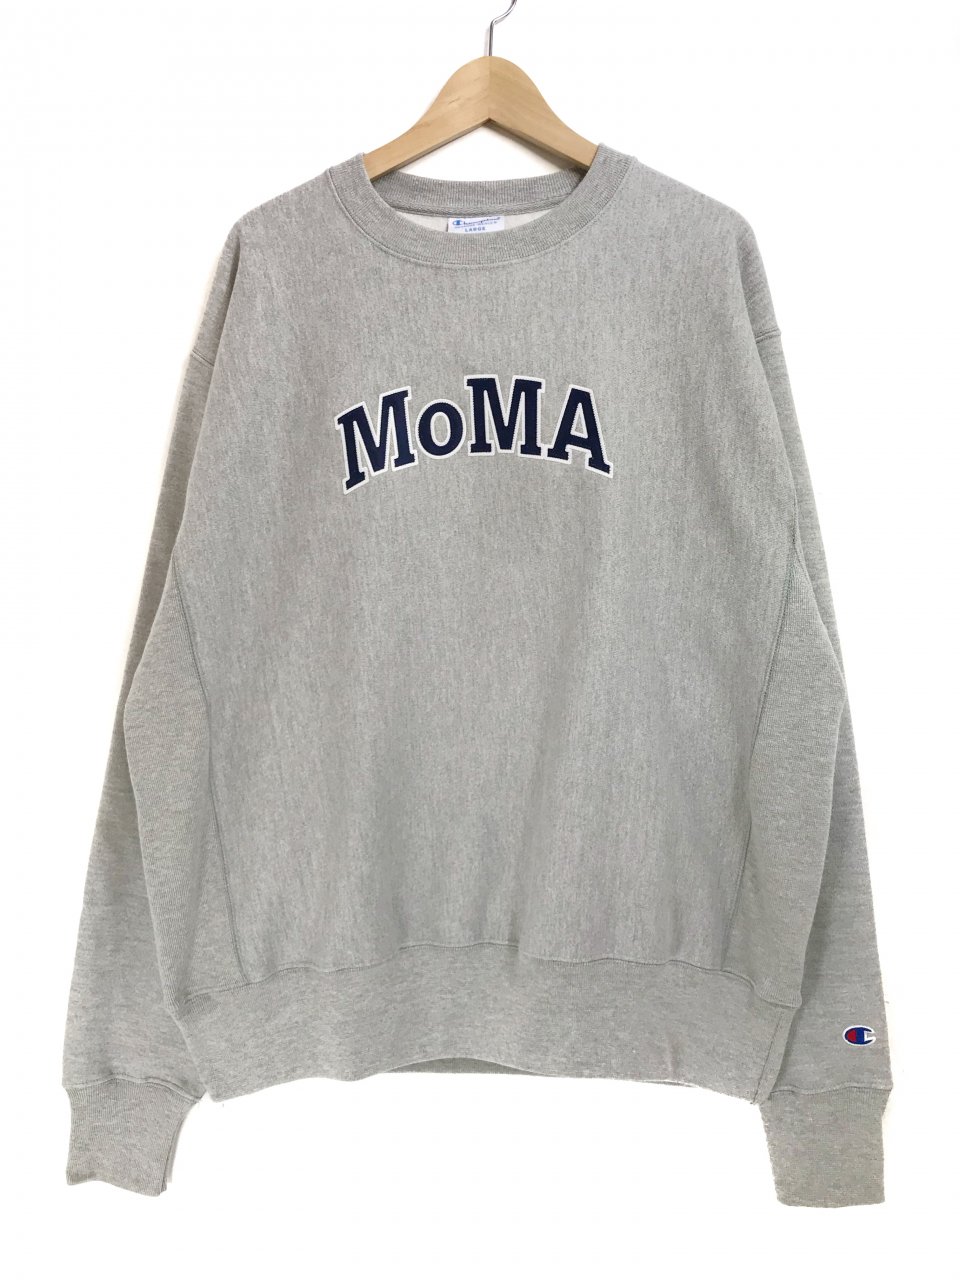 新品 Champion × MoMA Limited Edition Reverse Weave Sweatshirt (GREY) チャンピオン  モマ リバースウィーブ スウェット 灰 コラボ NEWJOKE ONLINE STORE